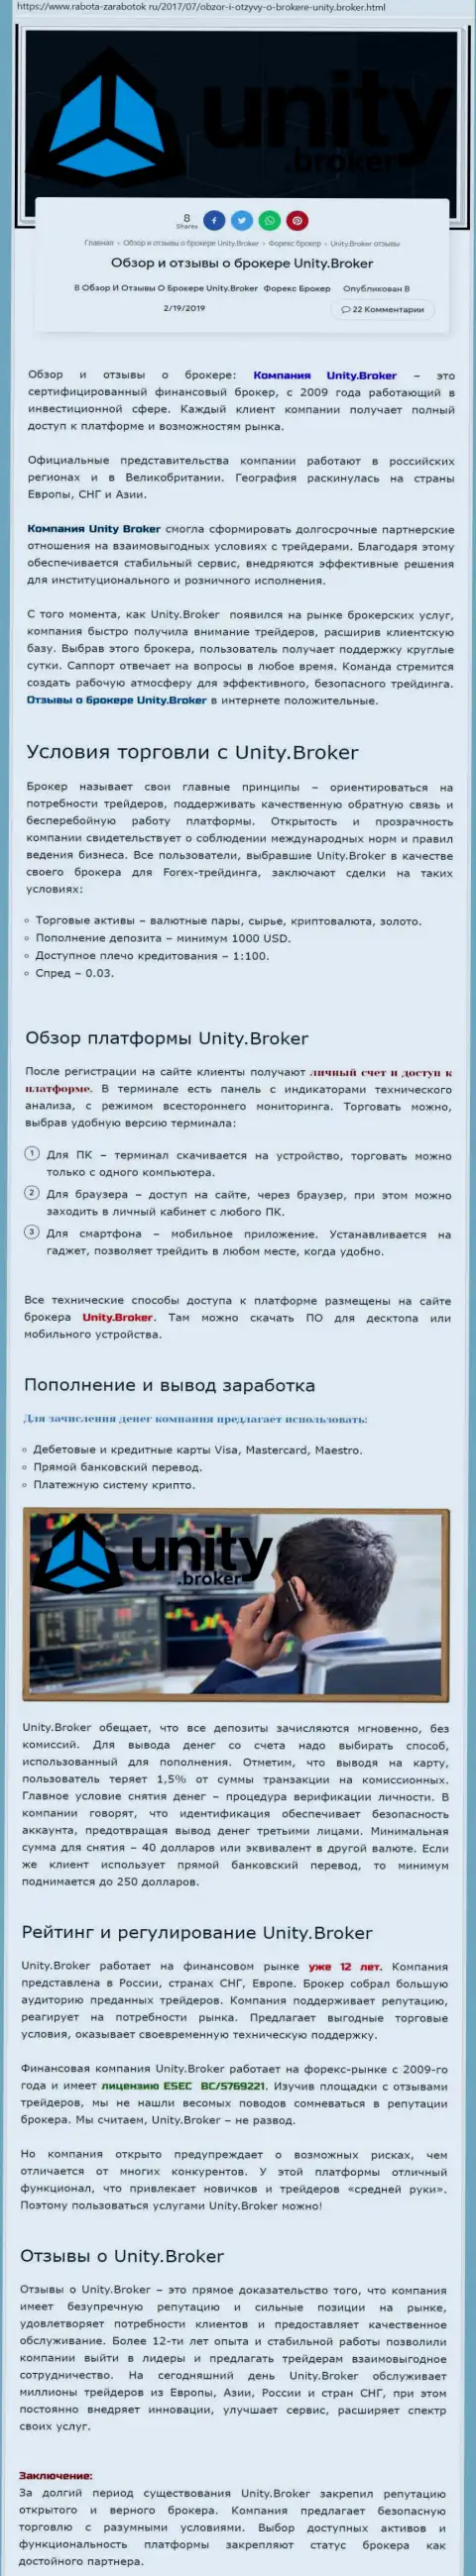 Обзорная информация Форекс брокерской компании Unity Broker на web-портале Работа Заработок Ру